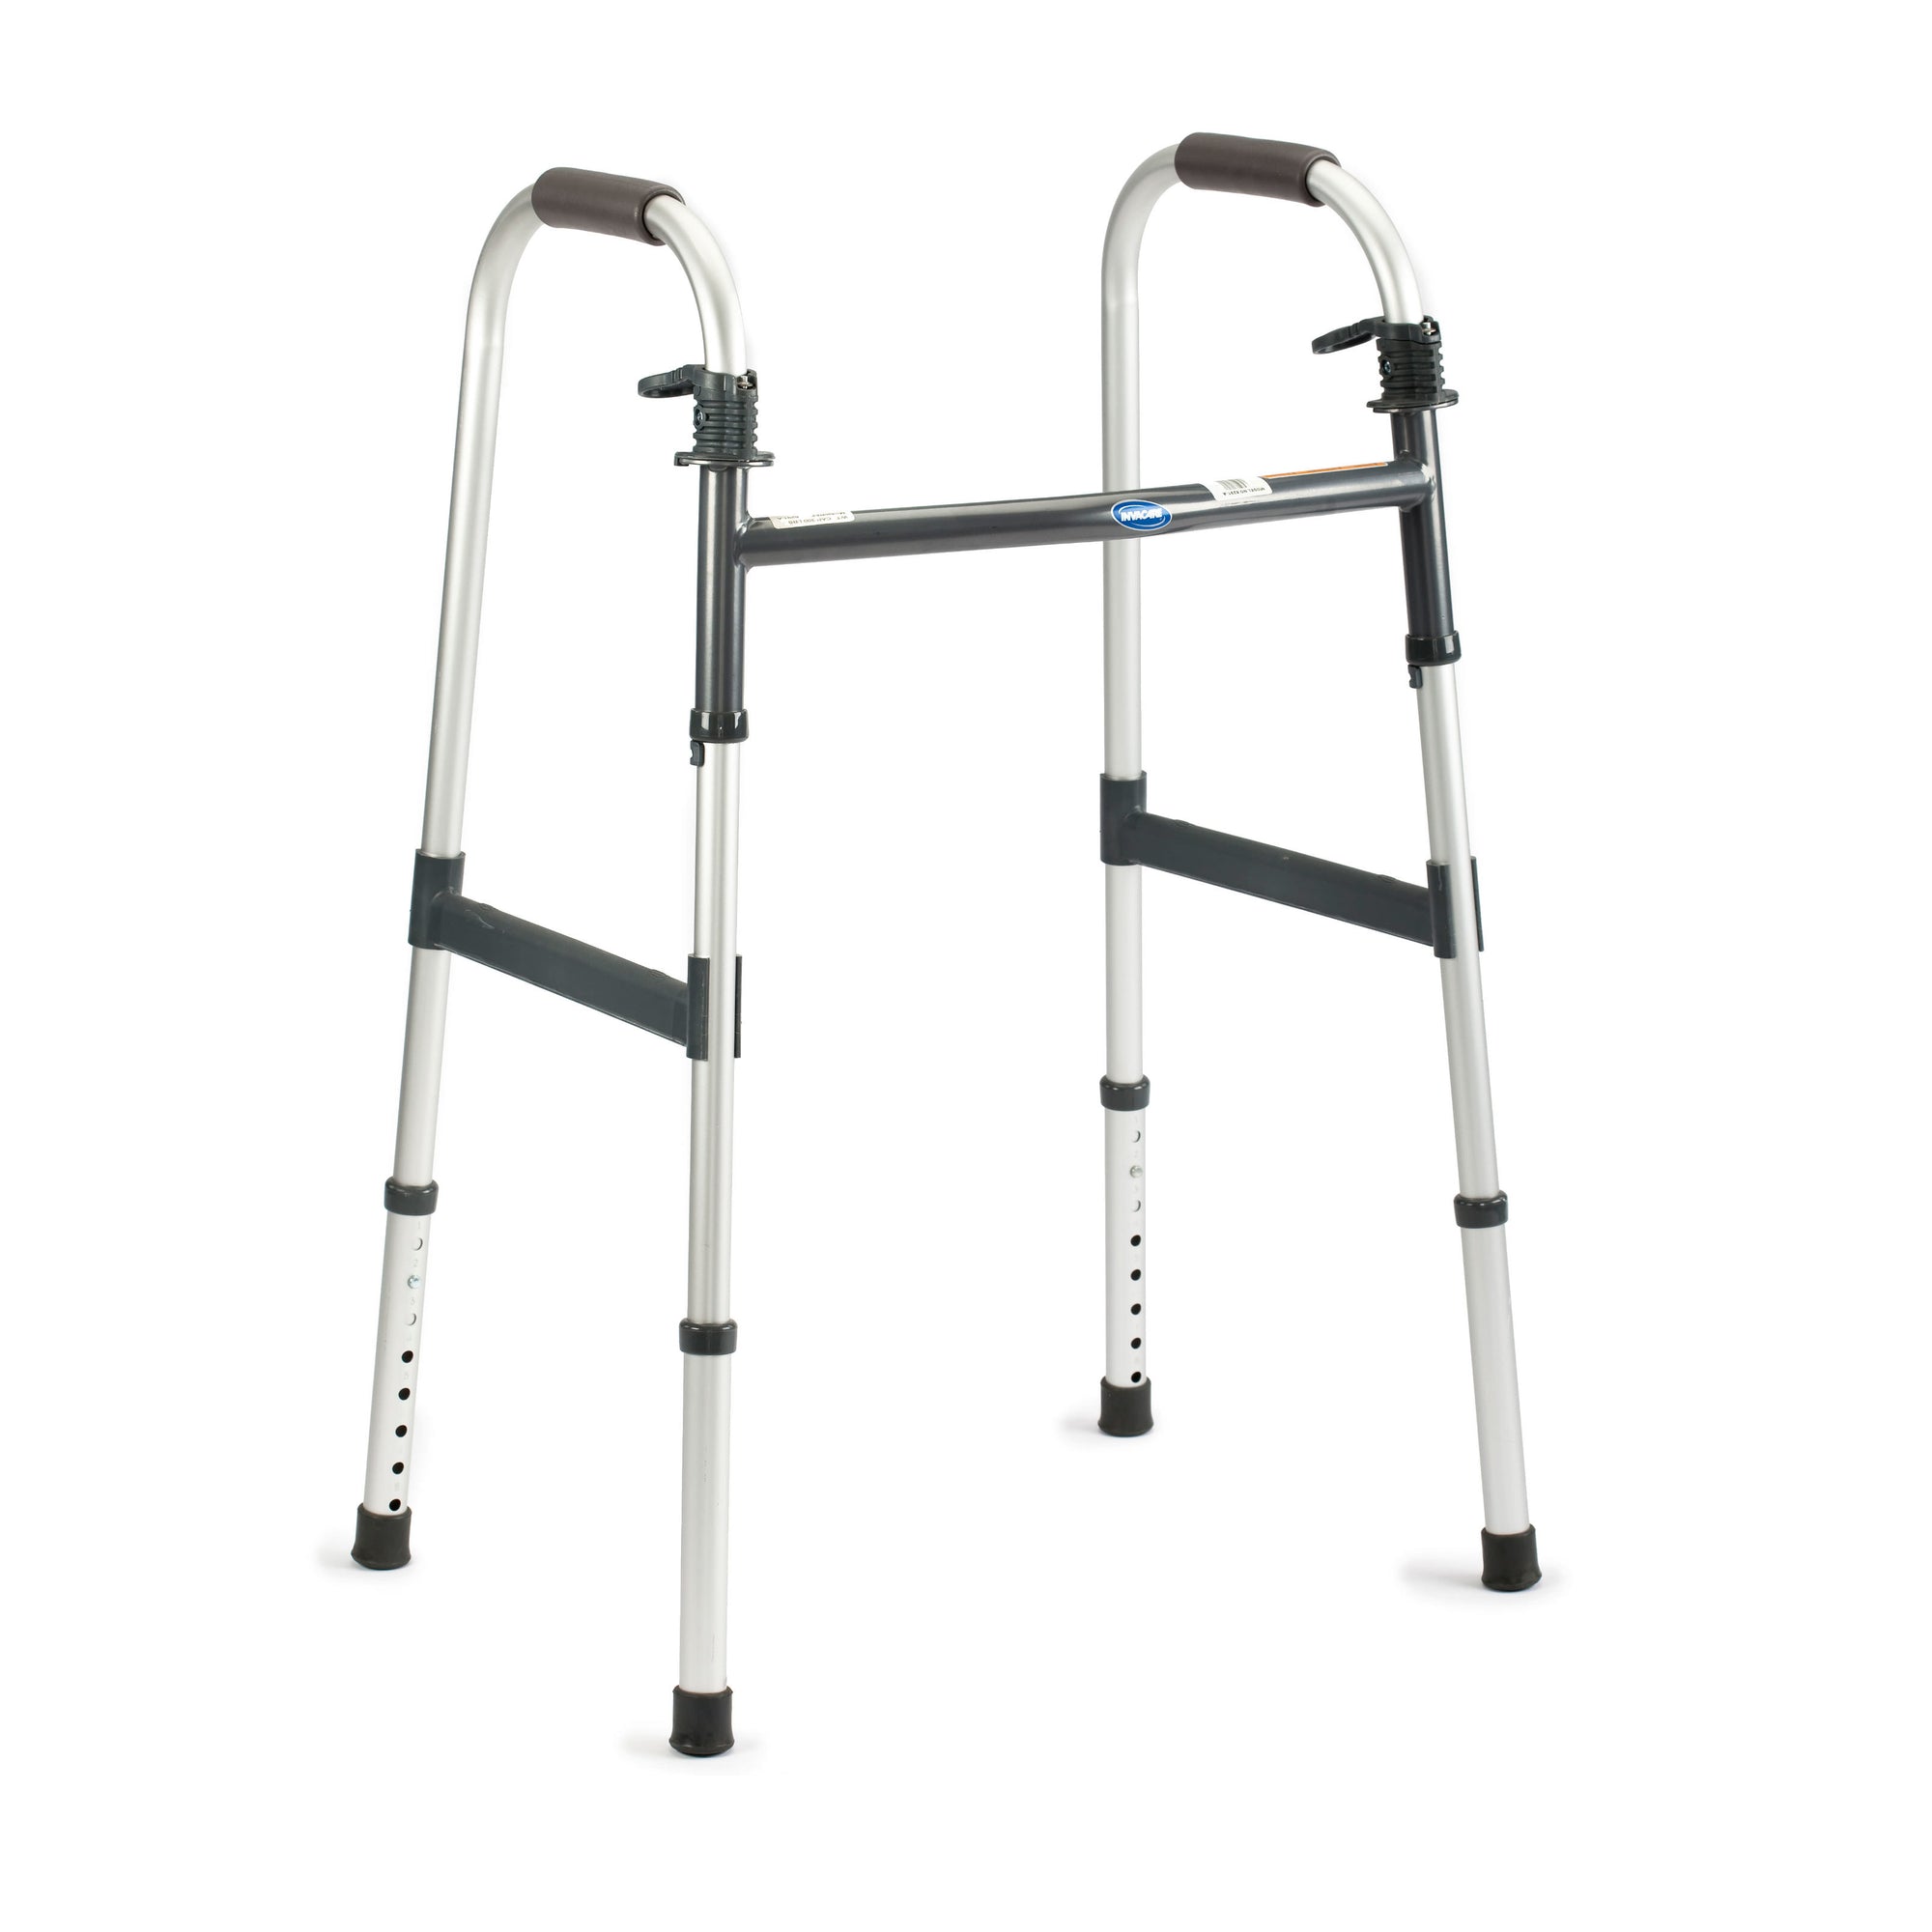 Ходунки для инвалидов шагающие. Ходунки шагающие с подмышечной опорой. Ходунки для инвалидов. Ходунки шагающие для инвалидов. Опоры ходунки для пожилых.